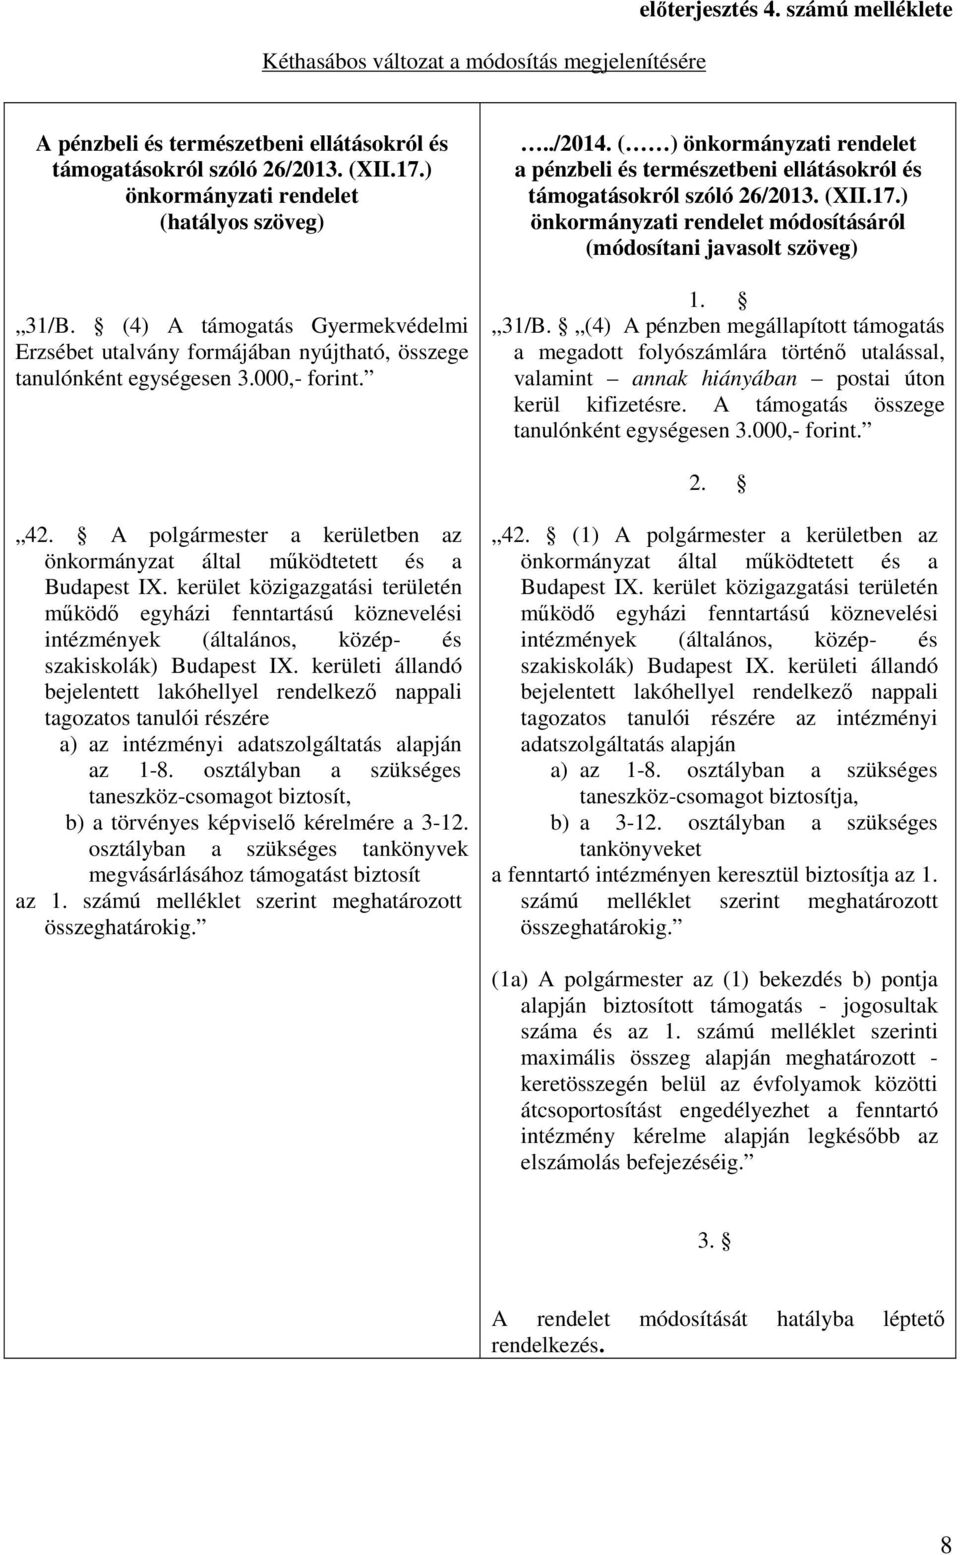 ( ) önkormányzati rendelet a pénzbeli és természetbeni ellátásokról és támogatásokról szóló 26/2013. (XII.17.) önkormányzati rendelet módosításáról (módosítani javasolt szöveg) 1. 31/B.